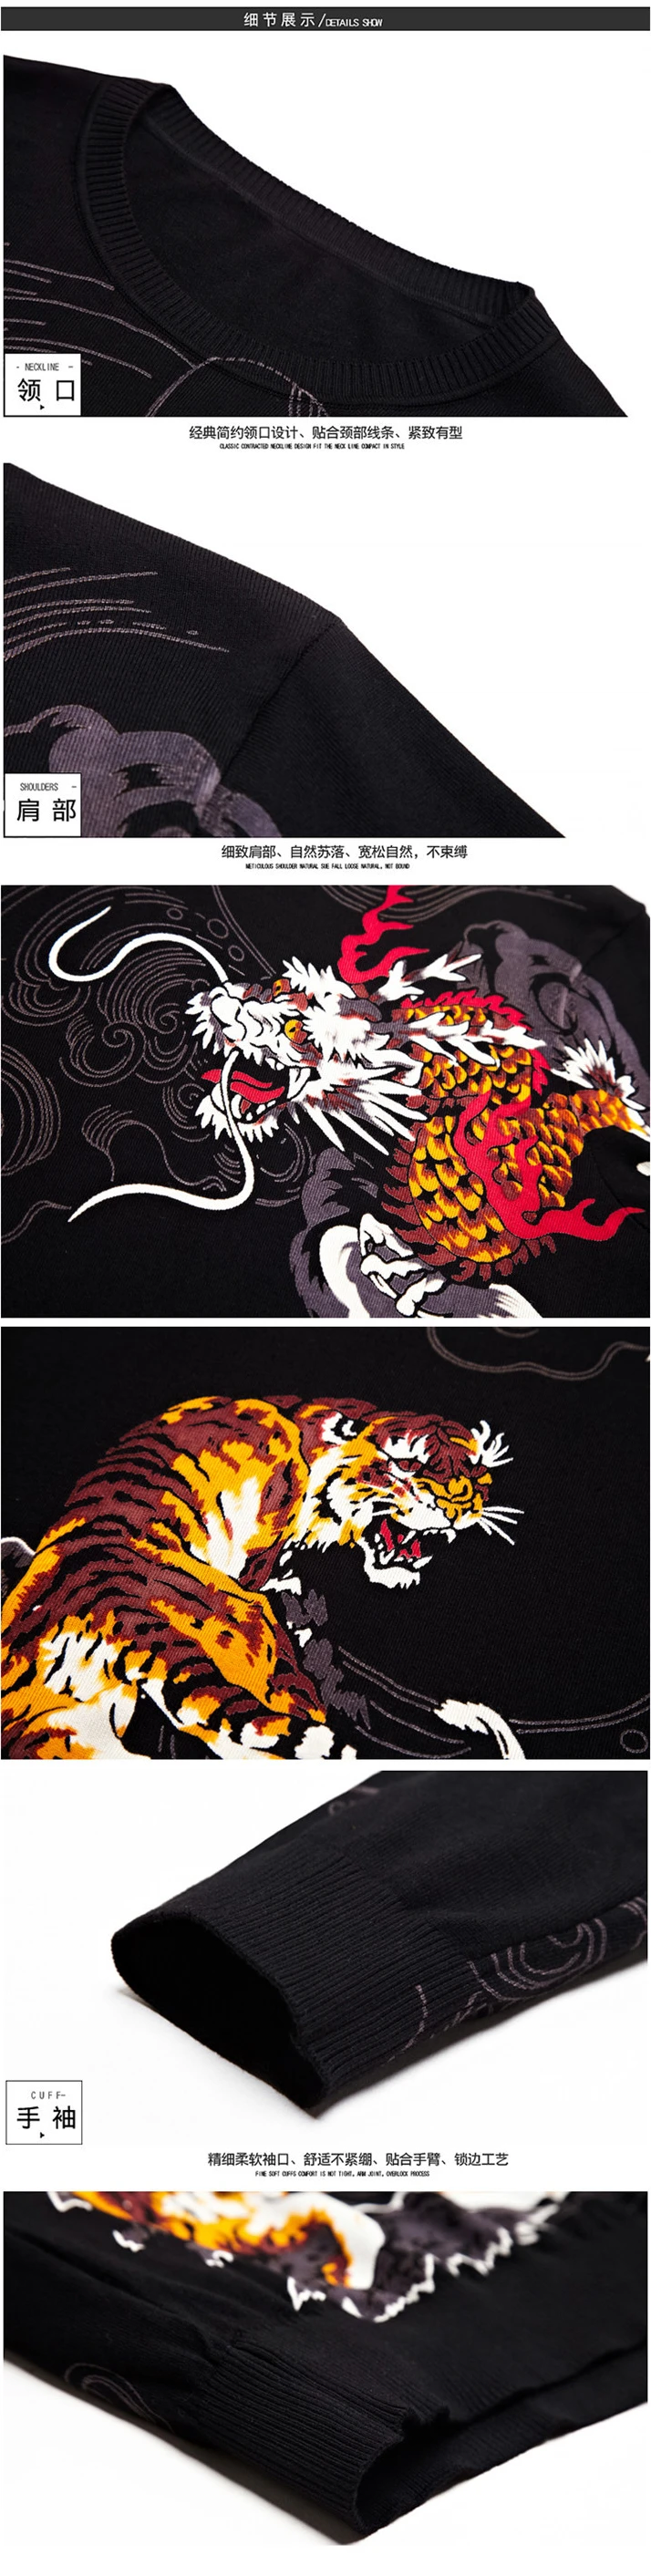 Китайский стиль Дракон Тигр узор 3d принт необычный вязаный свитер осень качественный мягкий удобный Роскошный тонкий свитер мужской M-3XL